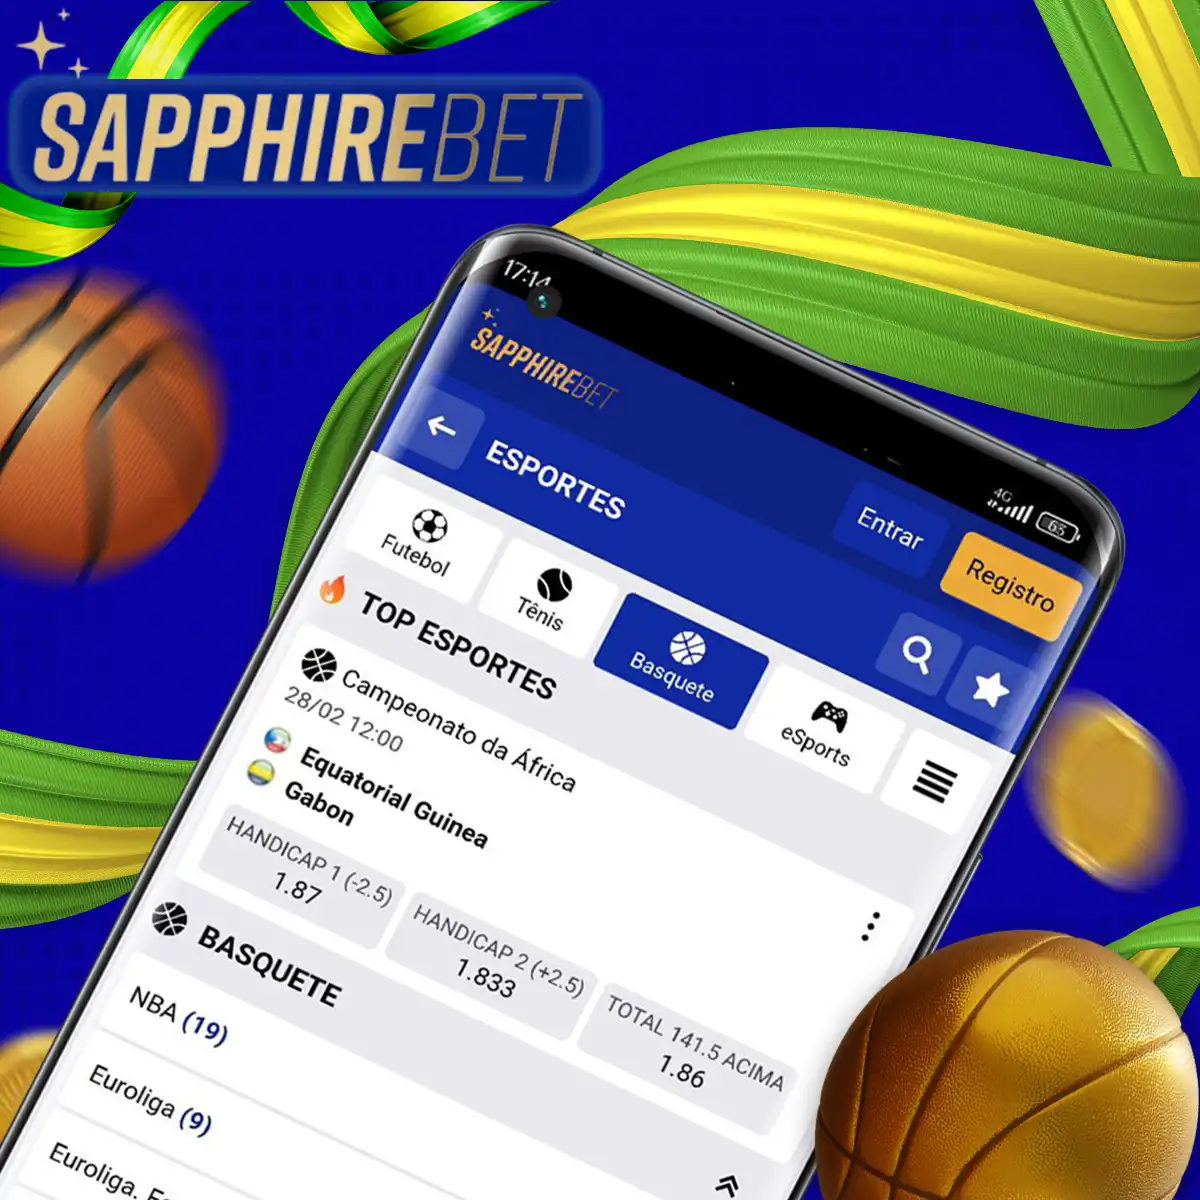 Apostas de basquete on-line com boas chances nas casas de apostas Sapphirebet